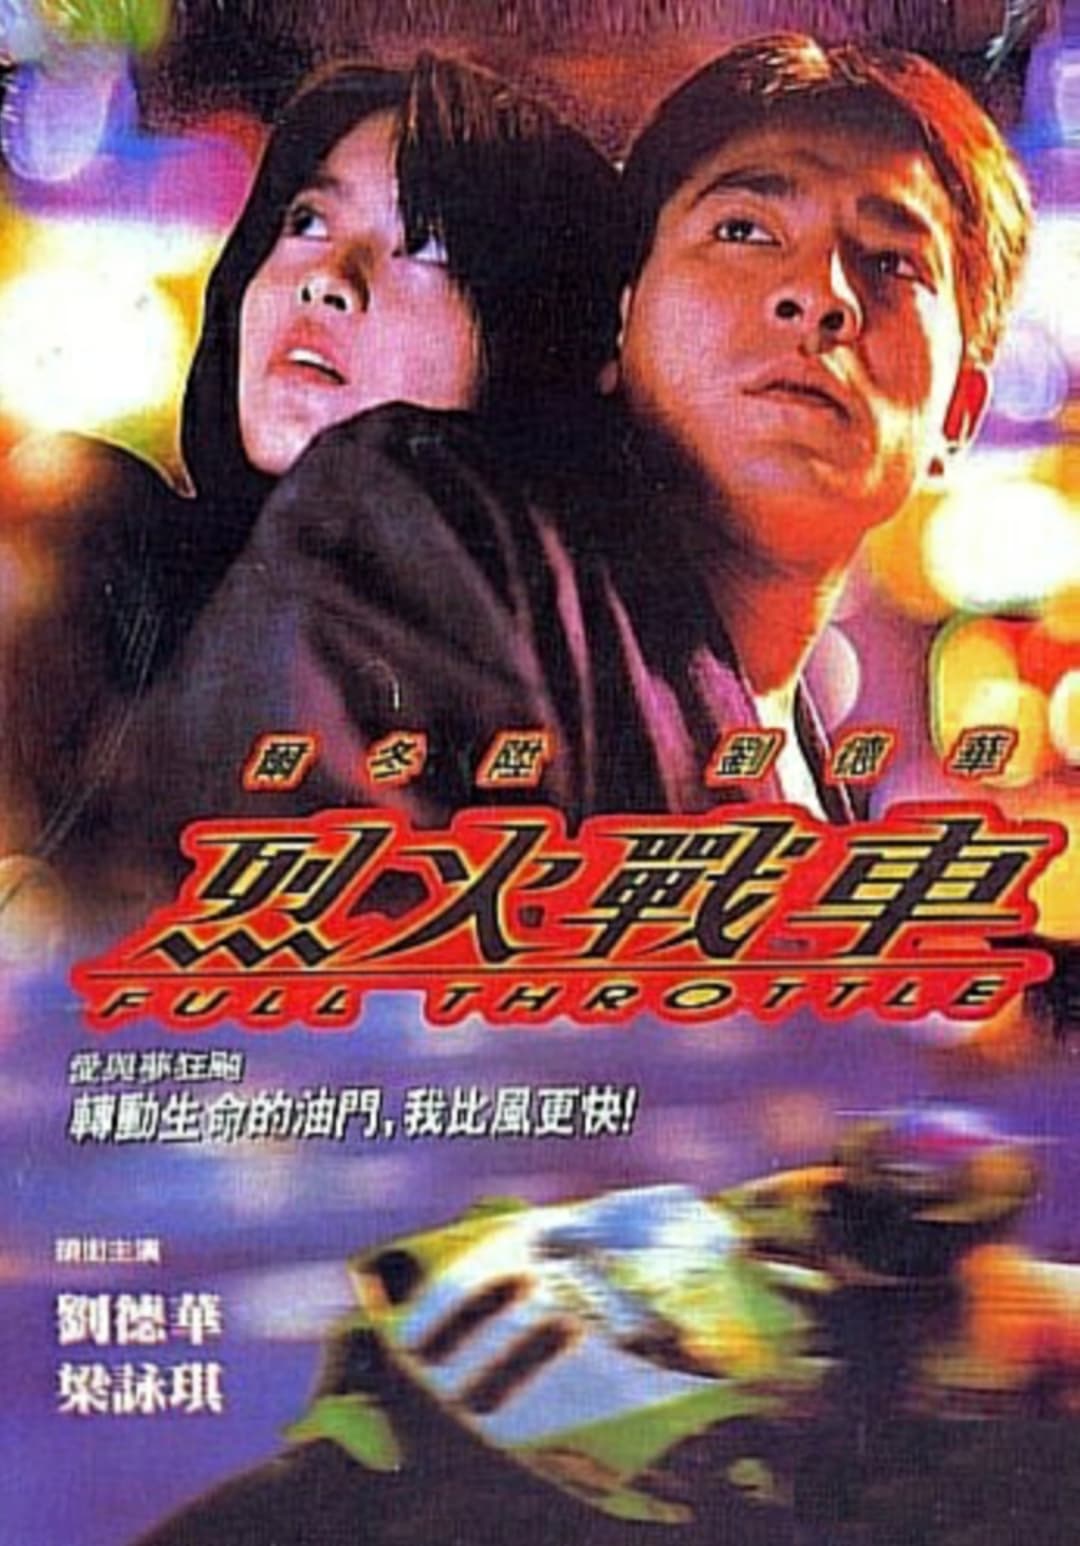 Full Throttle (1995)